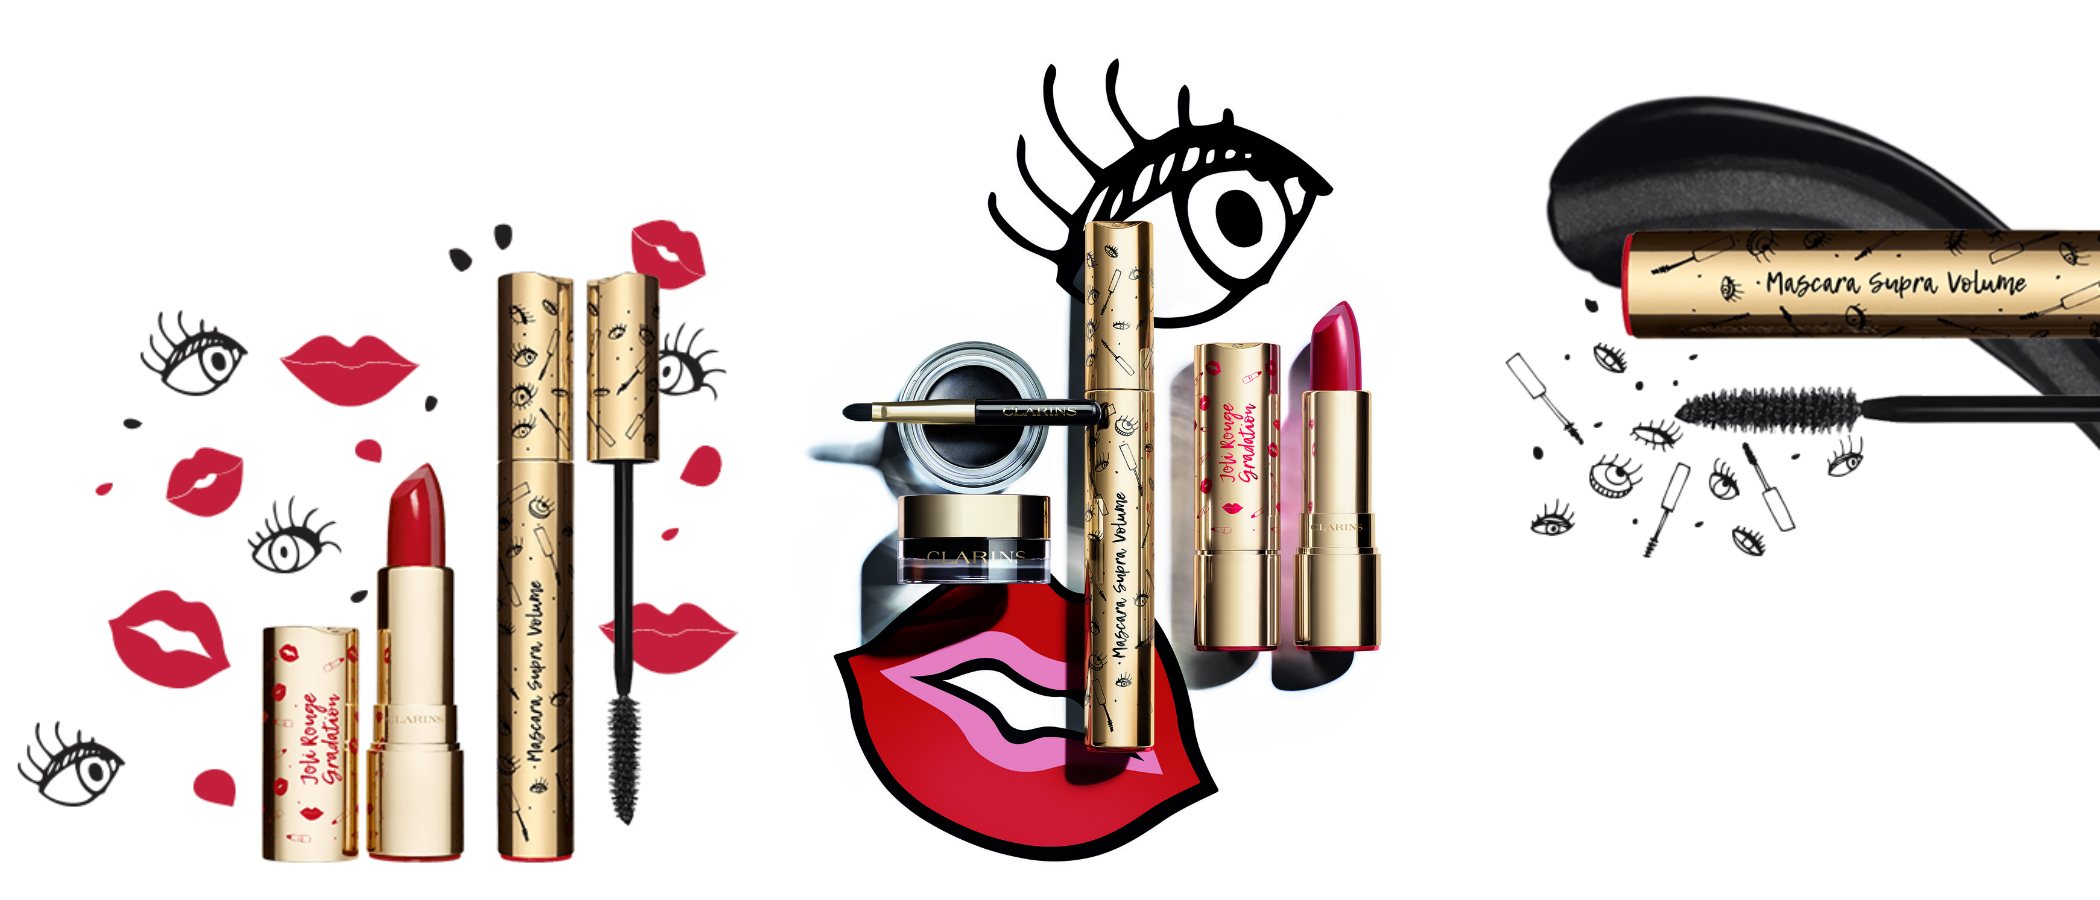 'The Joli Rouge & Noir!', la exclusiva colección de maquillaje de Clarins para este otoño 2018